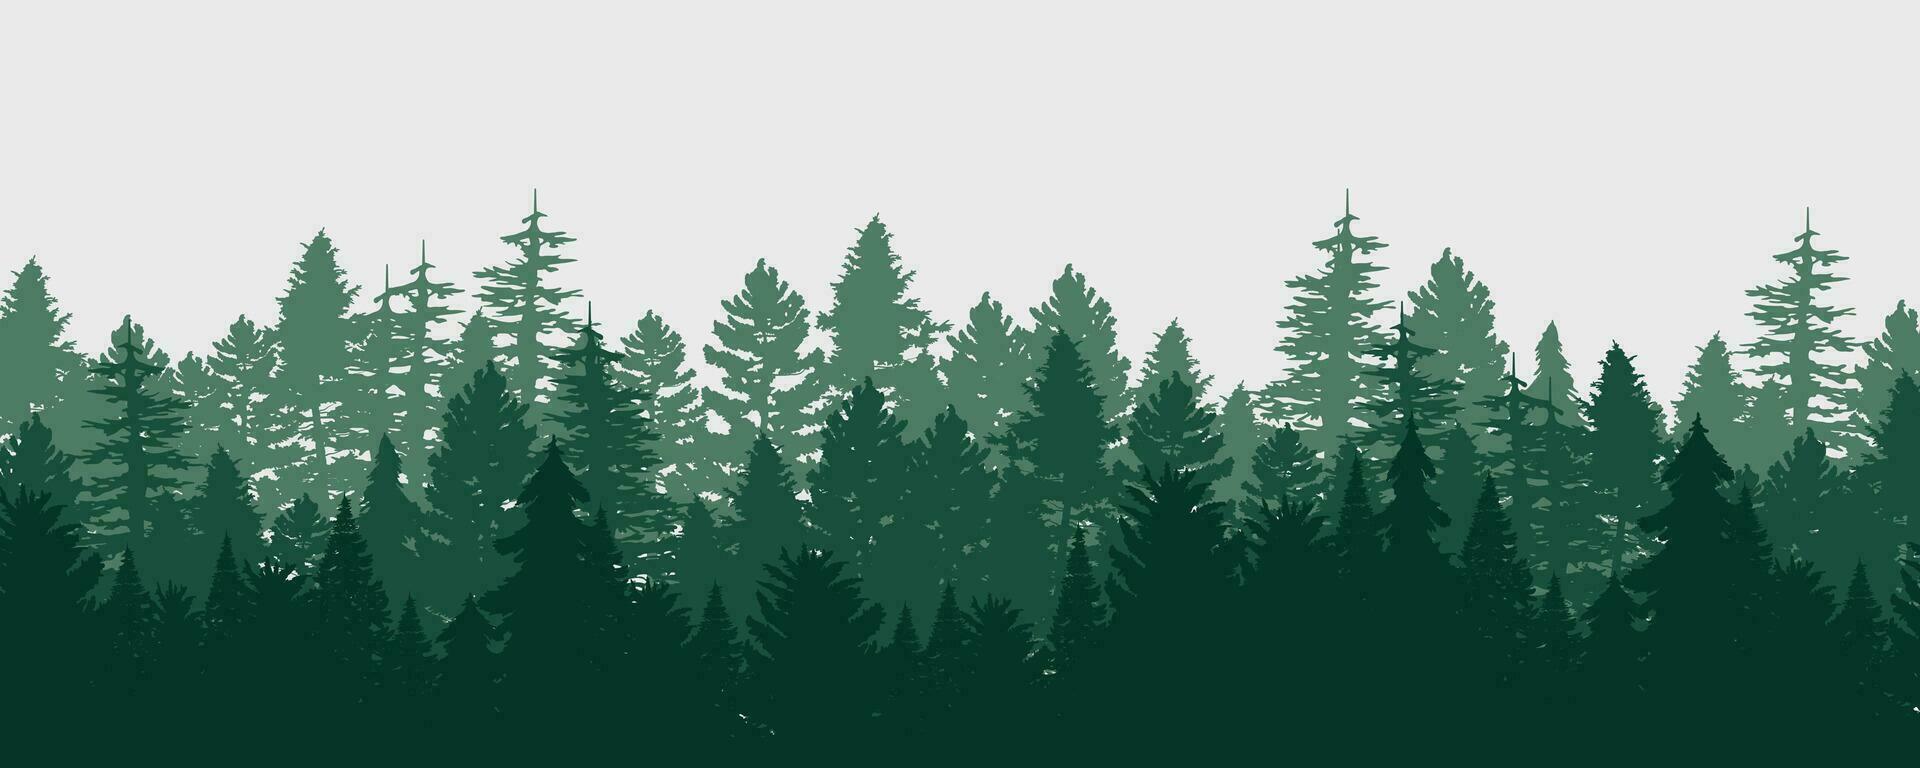 träd skog, parkera, gränd. landskap av isolerat träd. silhuett vektor. vektor